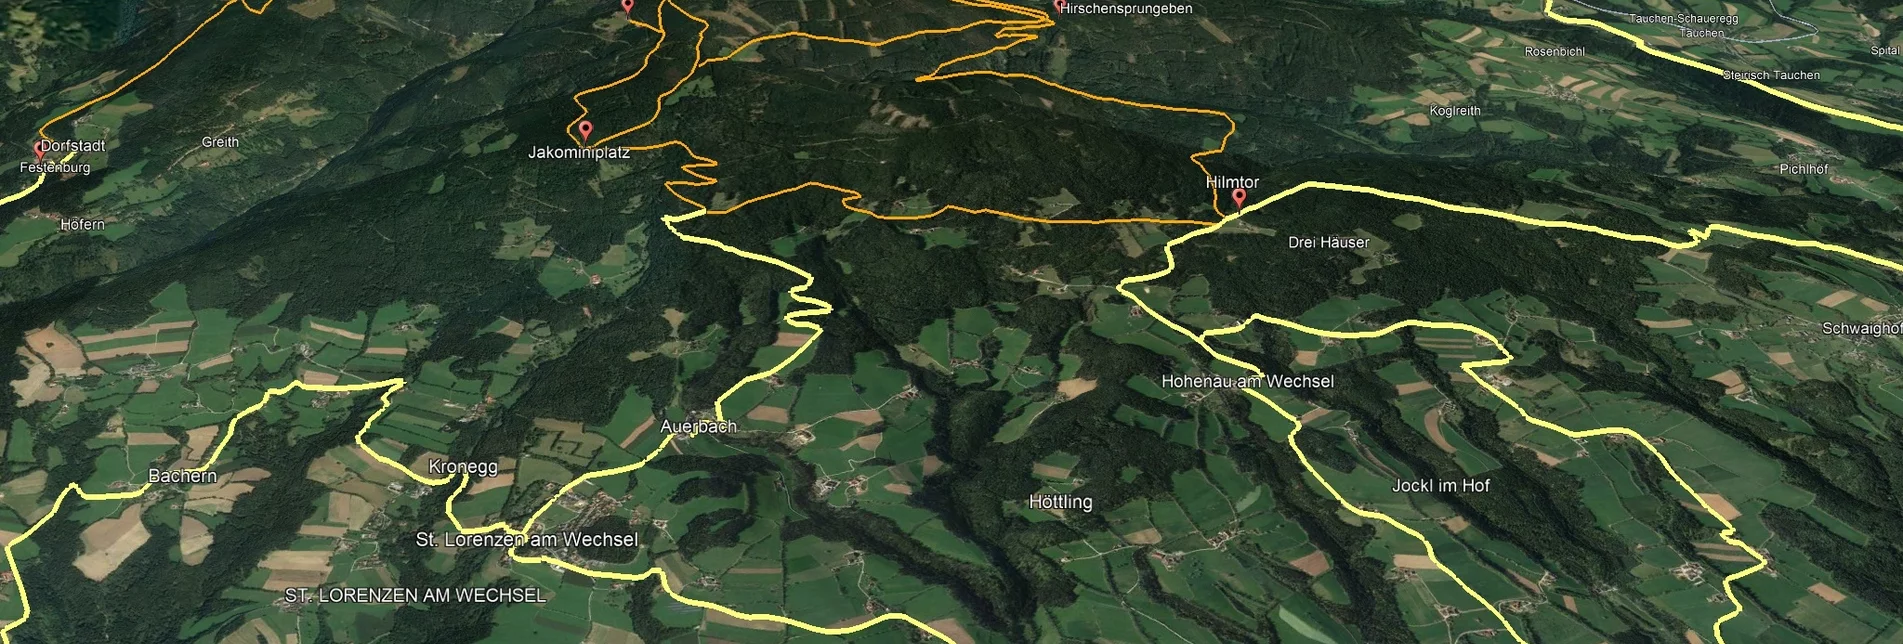 Mountainbike VORSCHAU Steirische Wexl Trails - Jakominiweg Route - Touren-Impression #1 | © Verein Tourismusentwicklung Steirischer Wechsel